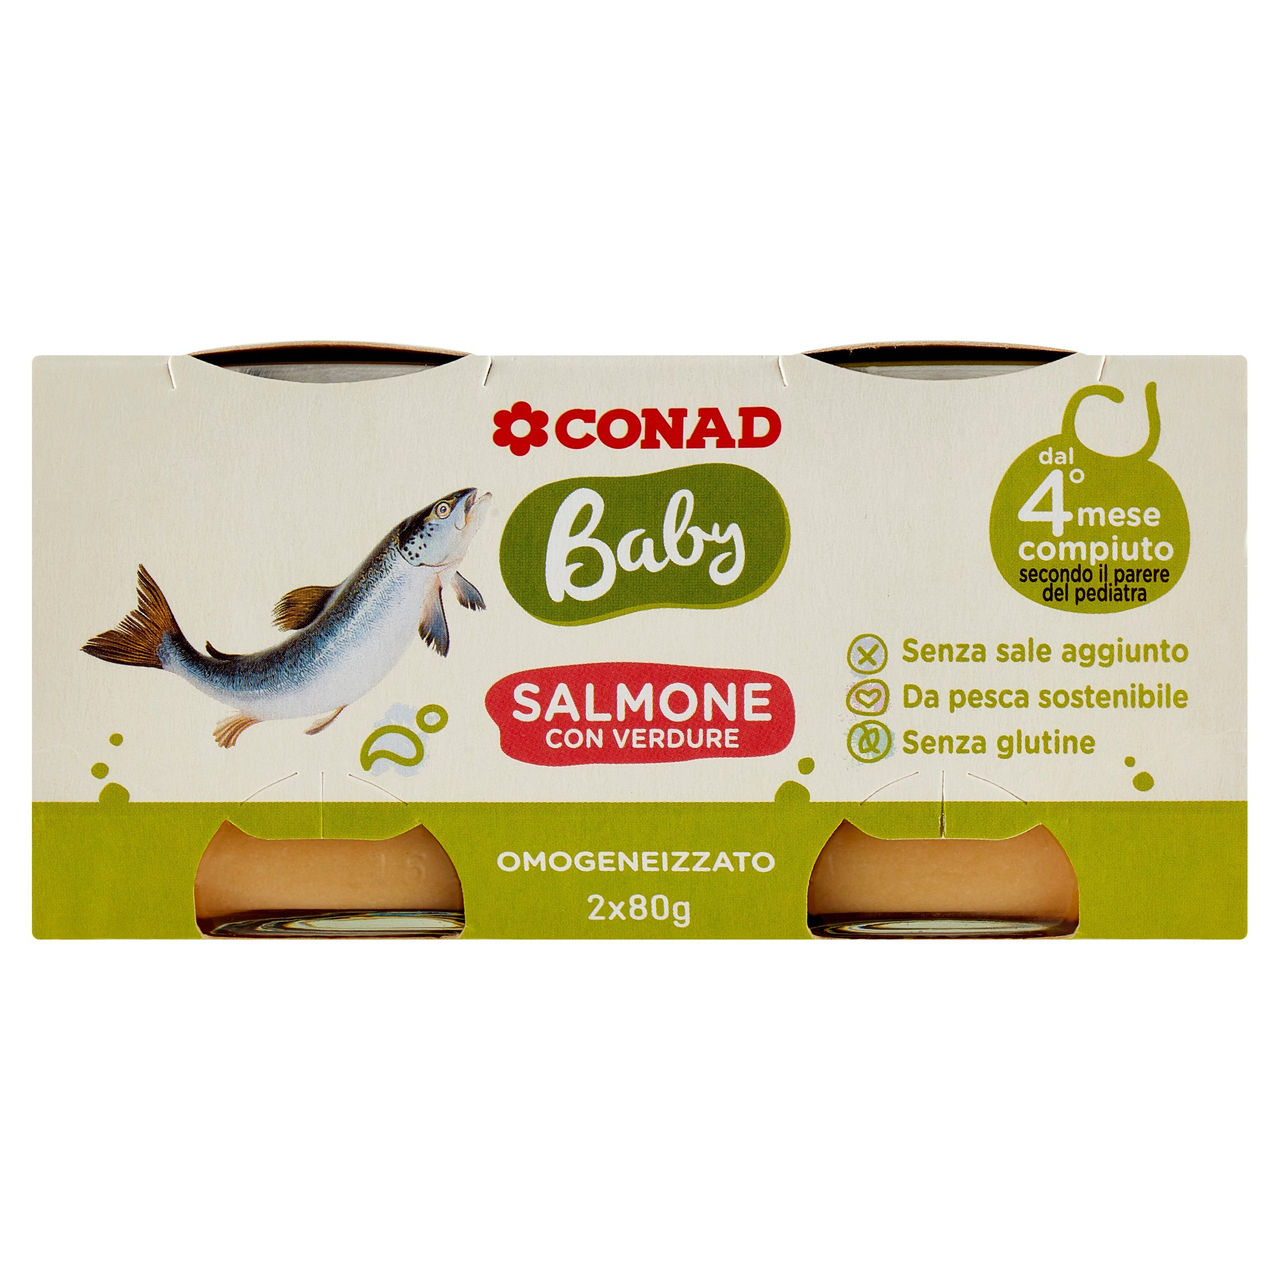 Omogeneizzato salmone Baby Conad in vendita online